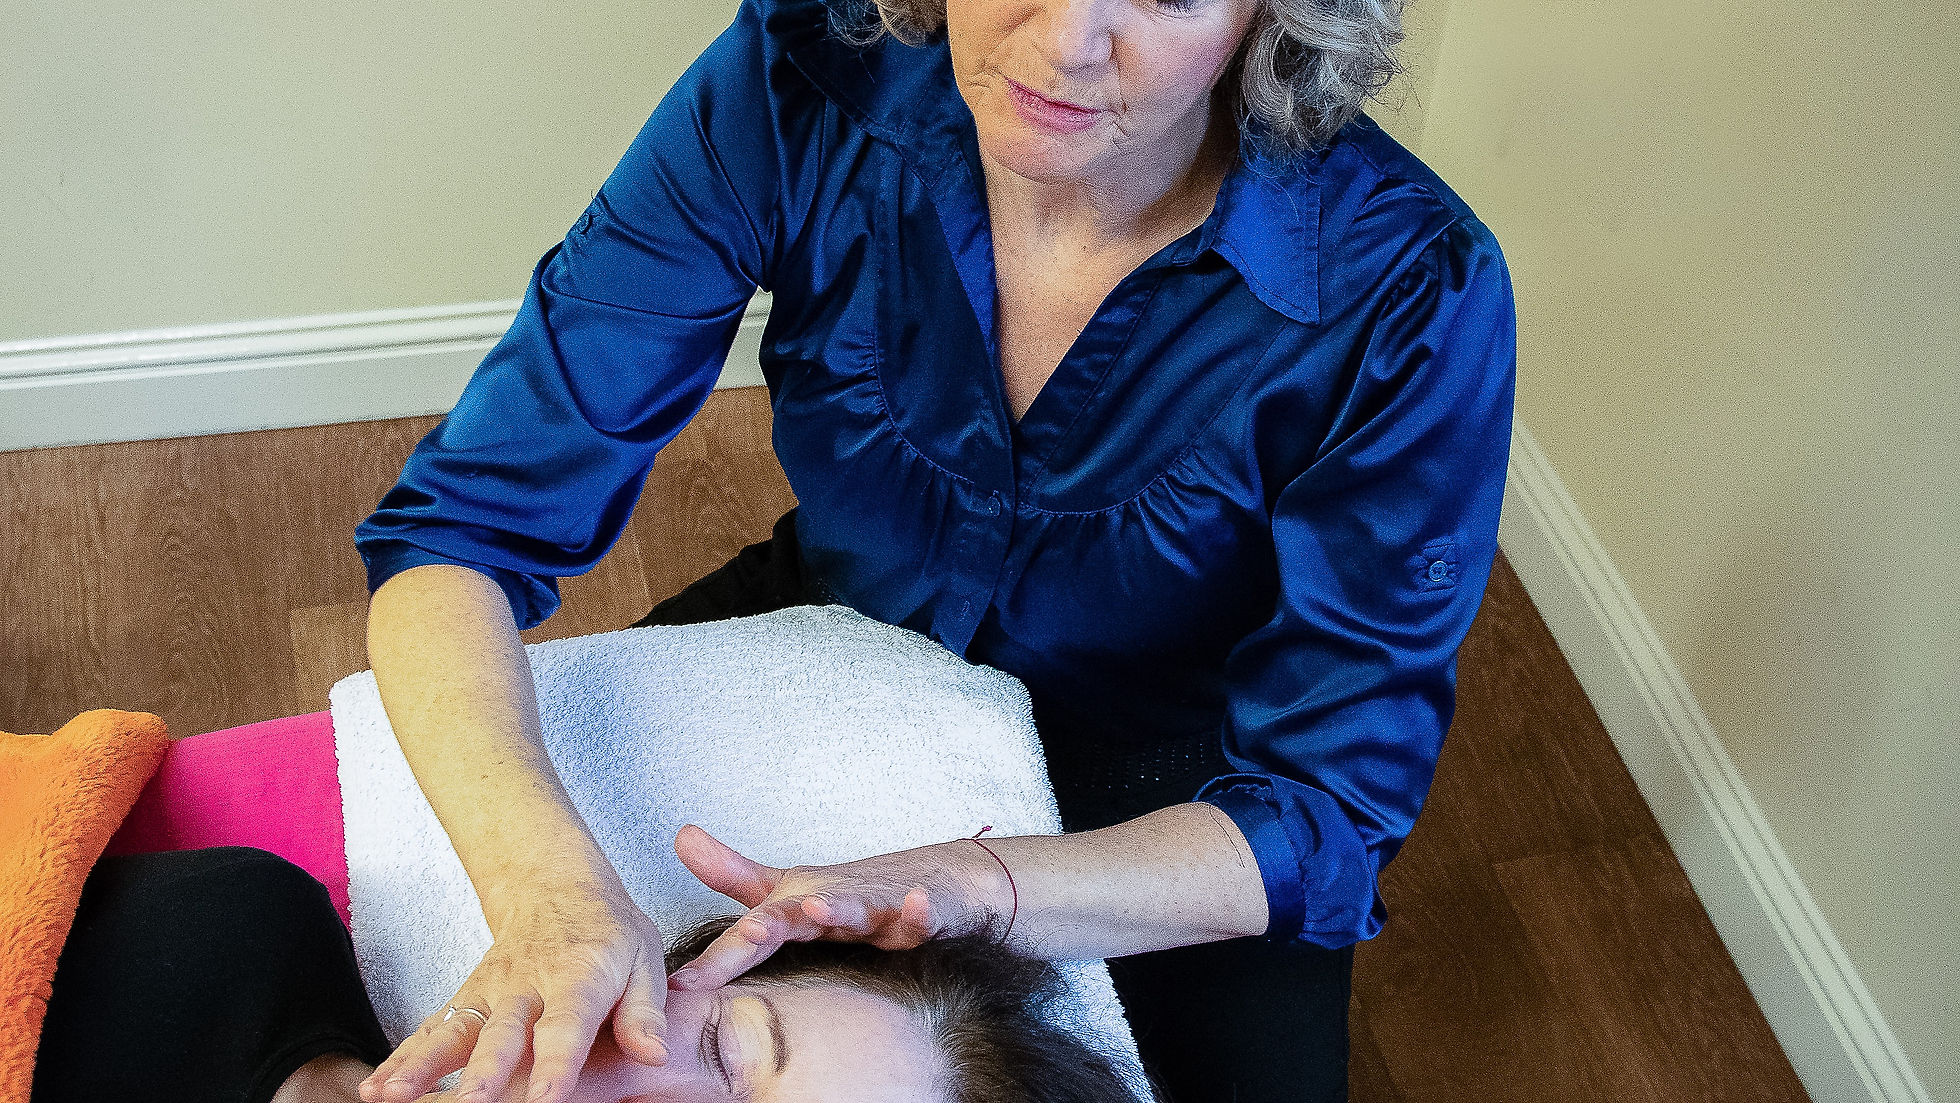 Video 2 - Deeper Facial Massage